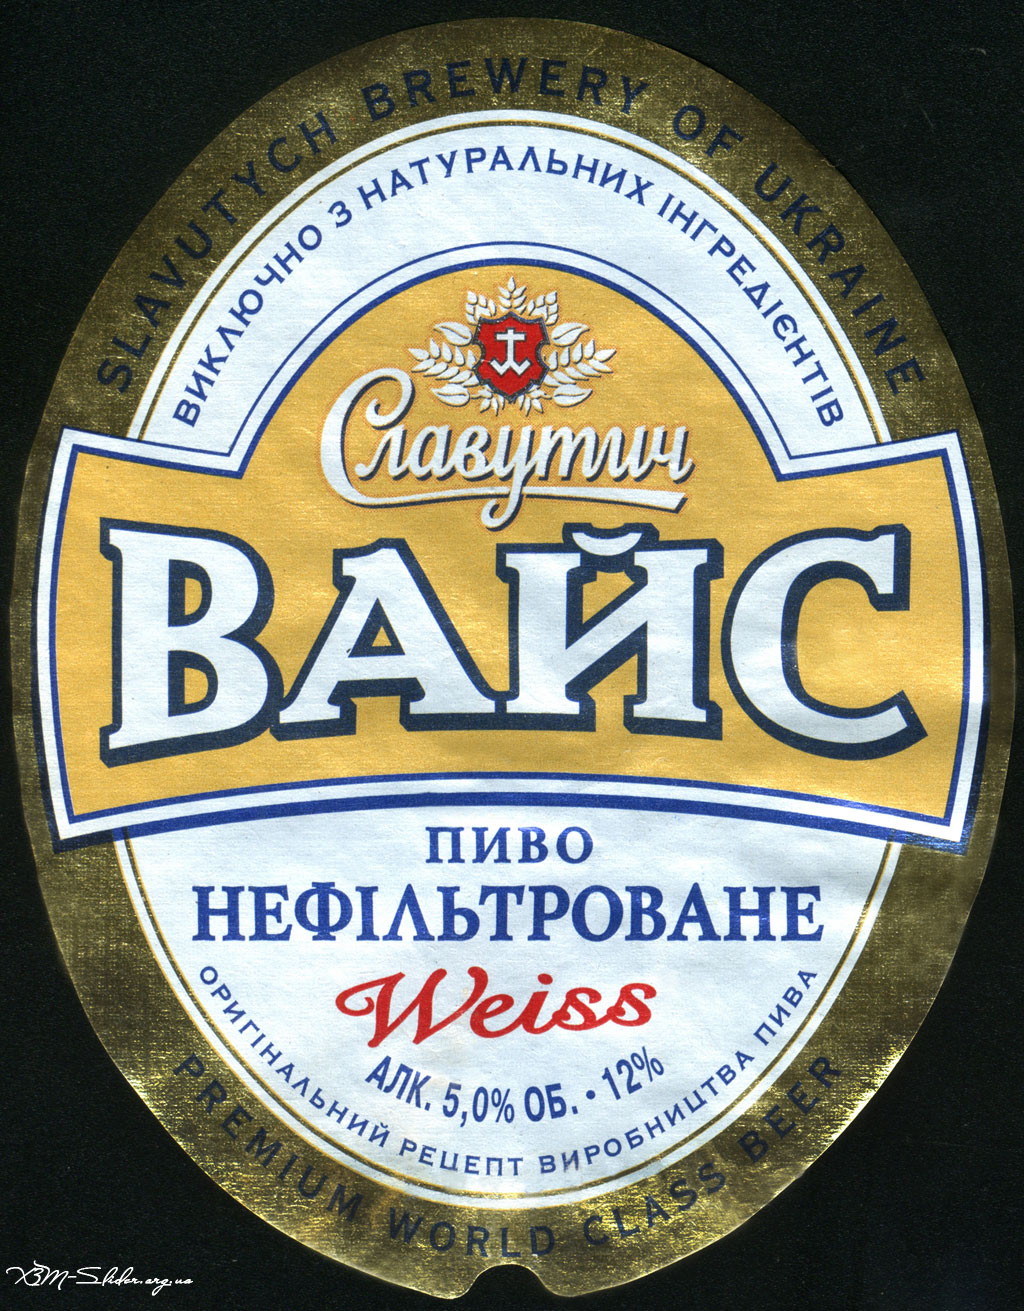 Славутич - Вайс - Пиво нефільтроване (Weiss)